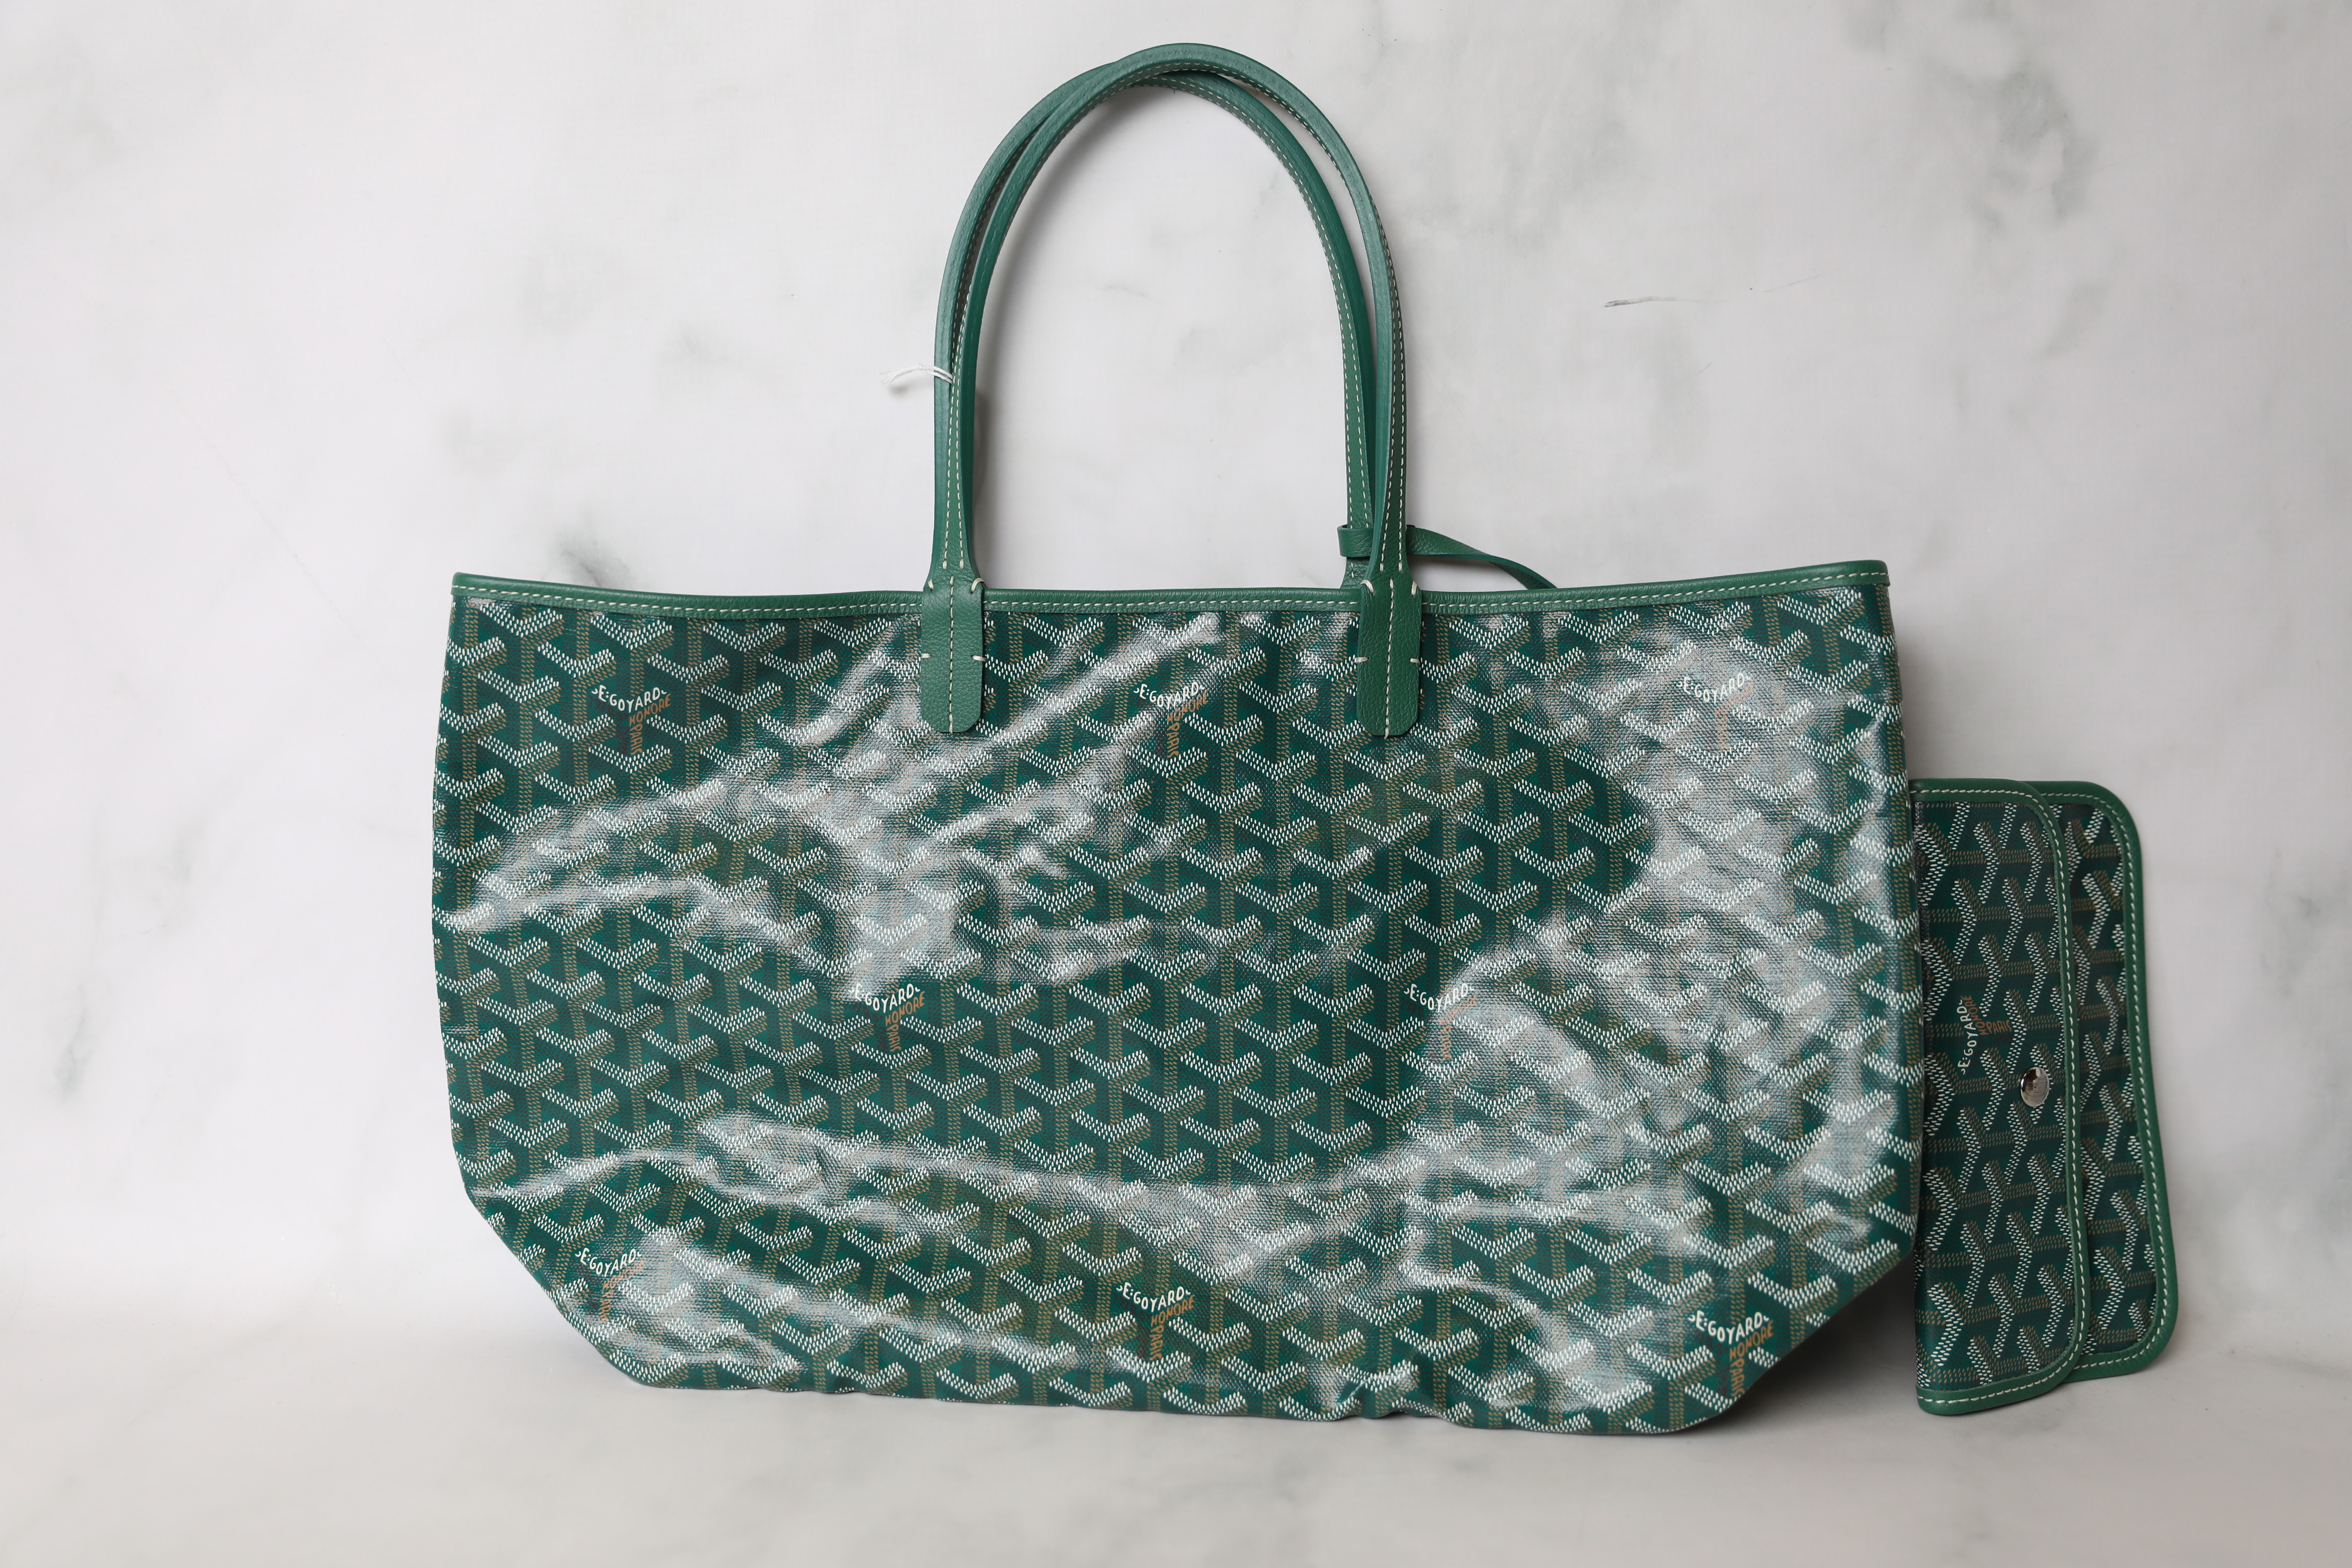 goyard tote bag green｜TikTok Search